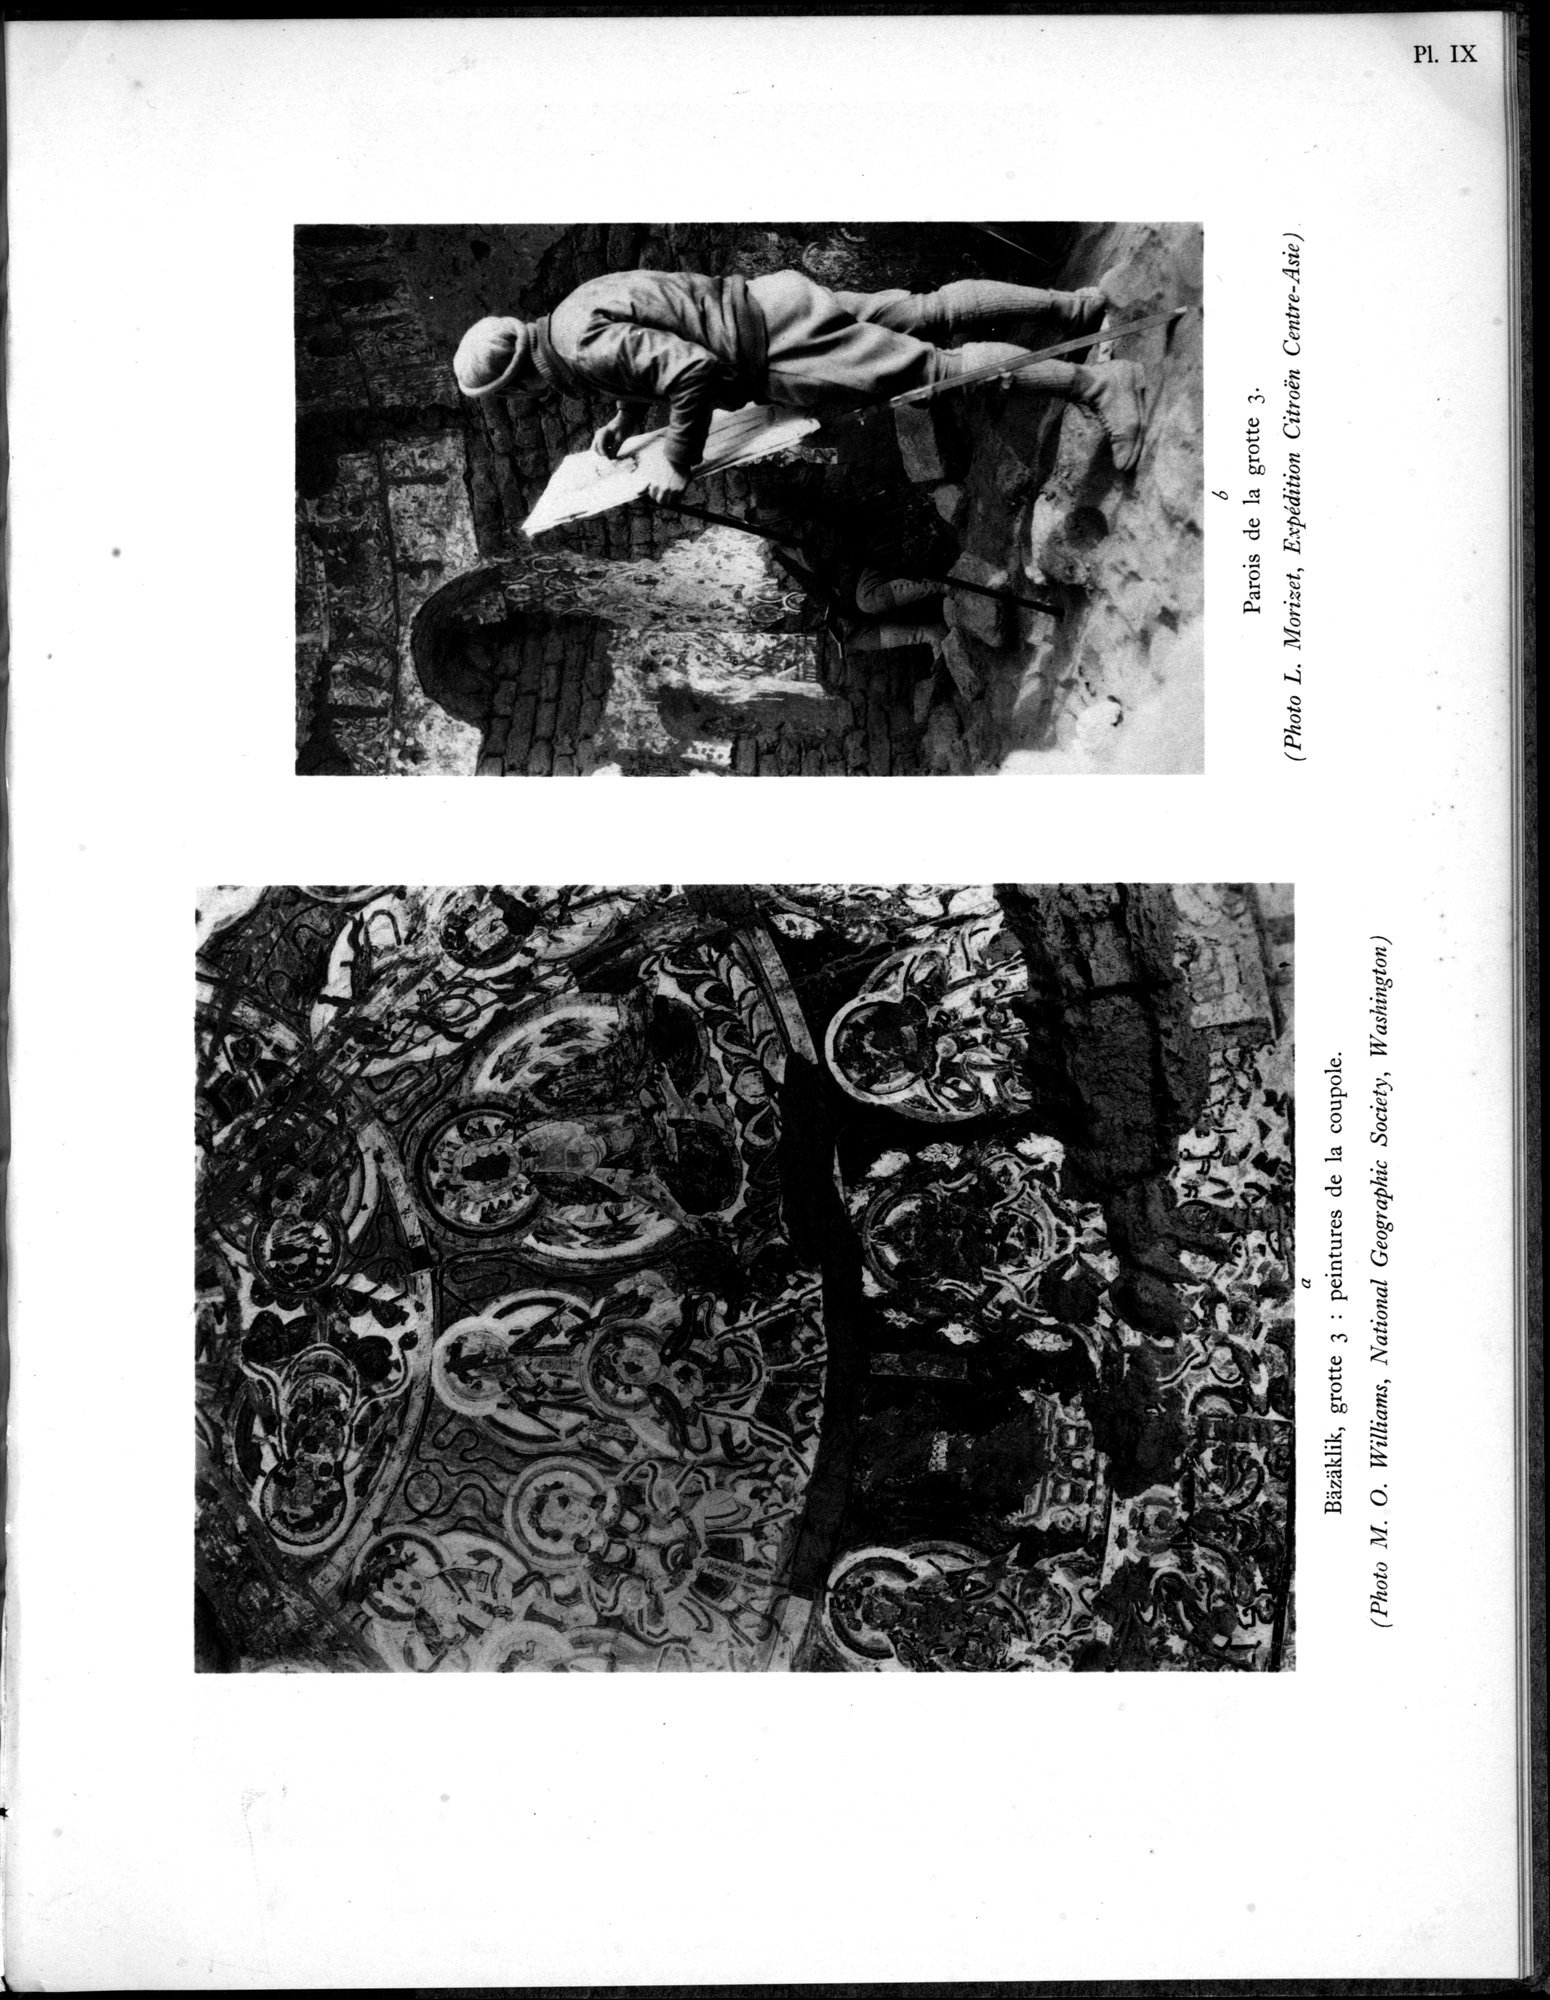 Recherches Archéologiques en Asie Centrale (1931) : vol.1 / Page 59 (Grayscale High Resolution Image)